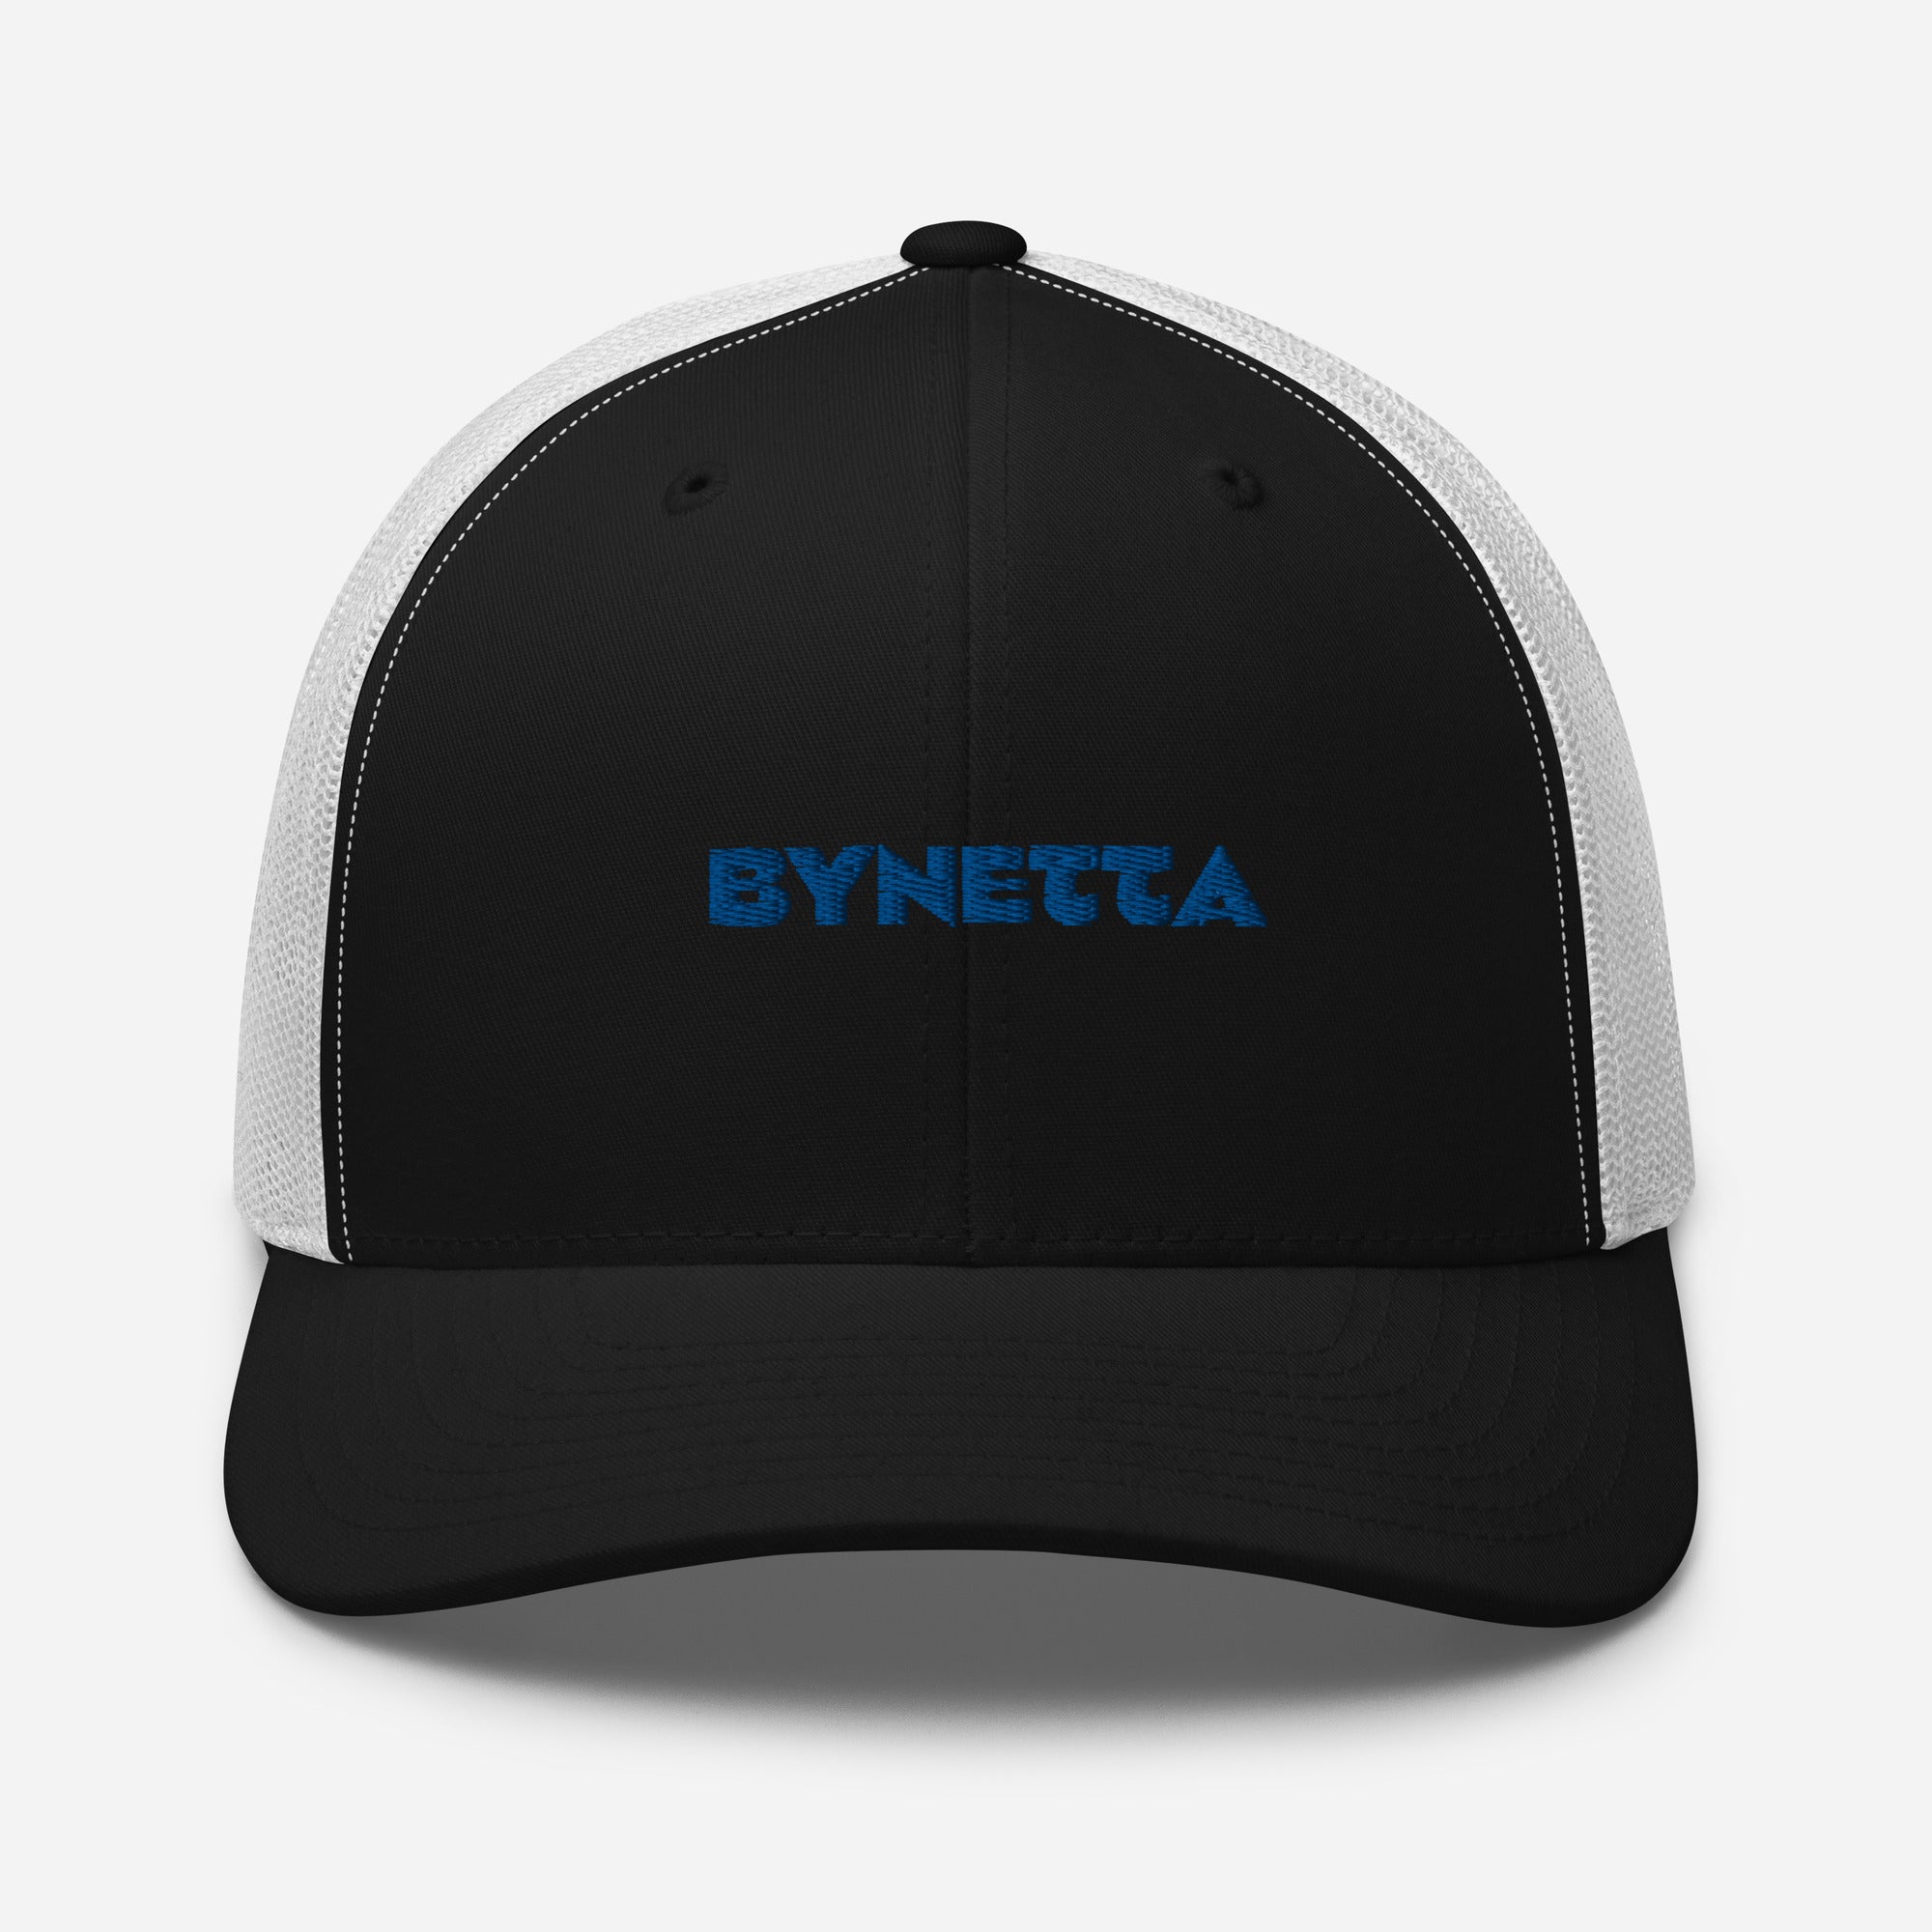 BYNETTA Trucker Cap